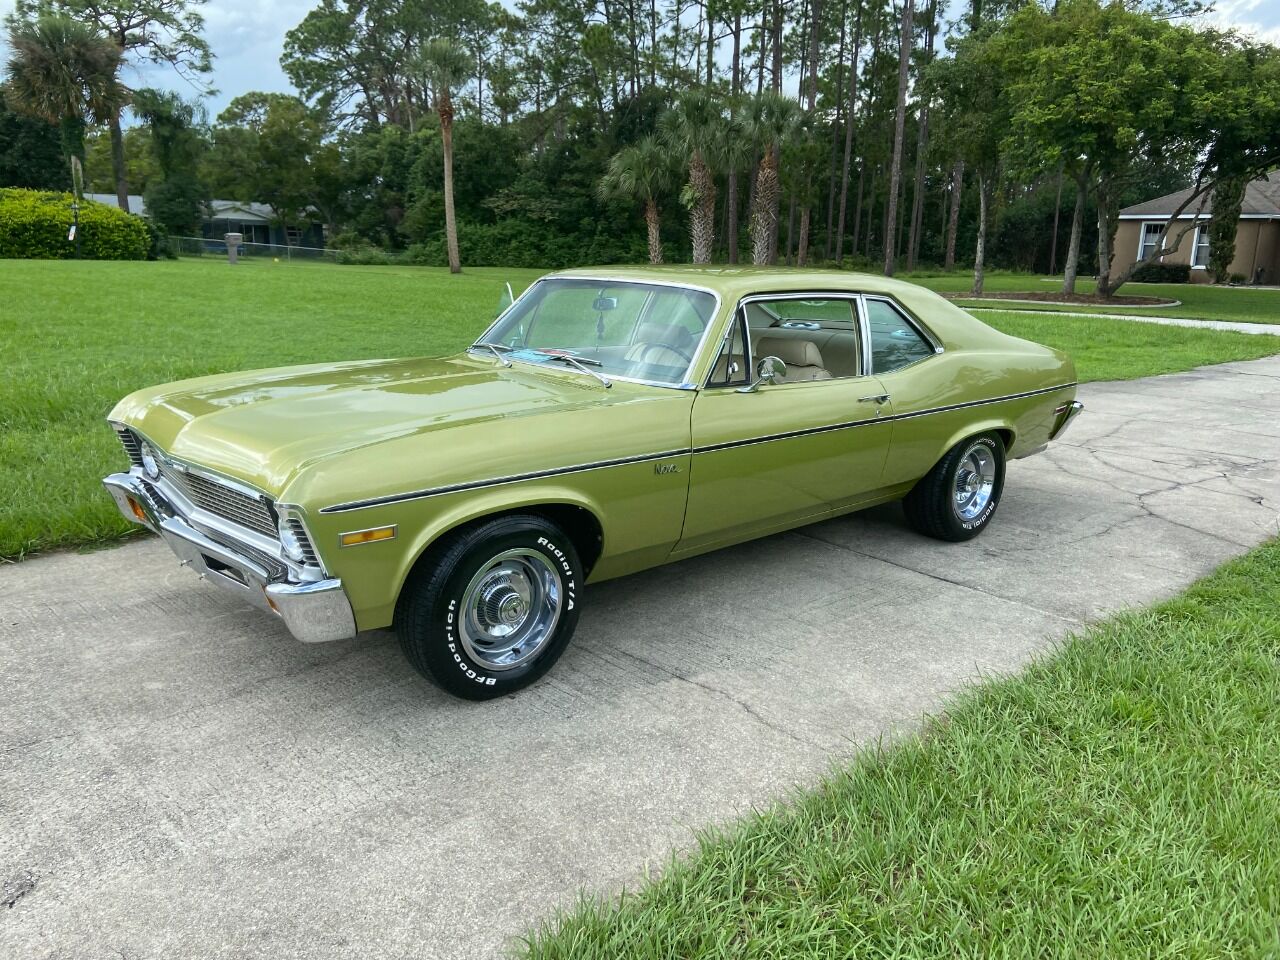 1971 Chevrolet Nova 